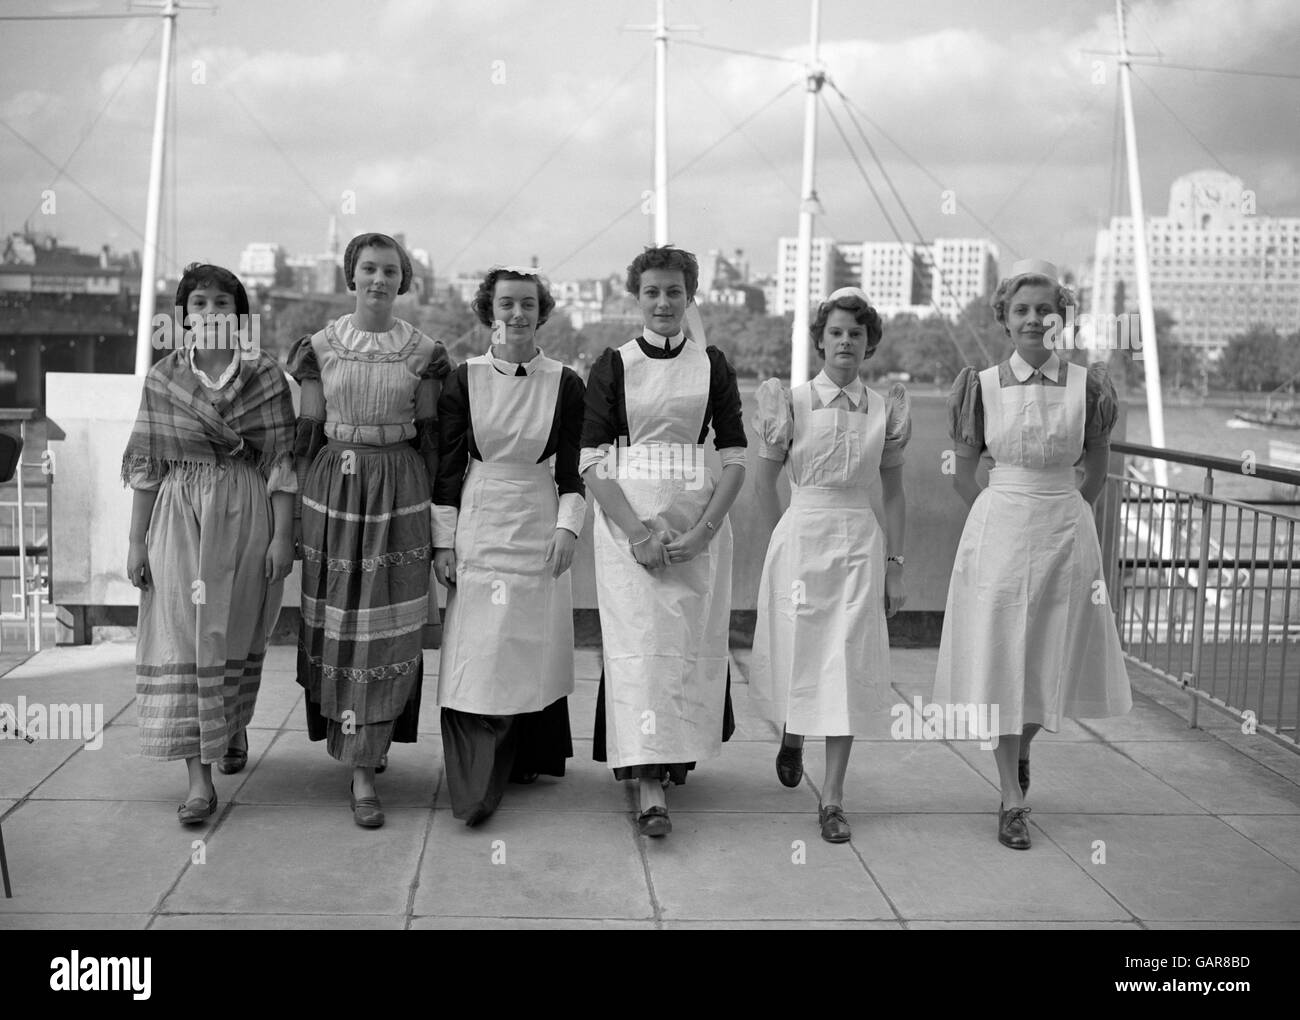 Britische Gesundheit - Royal College of Nursing historische Festzug - Krankenschwestern Kostüme - London - 1953 Stockfoto